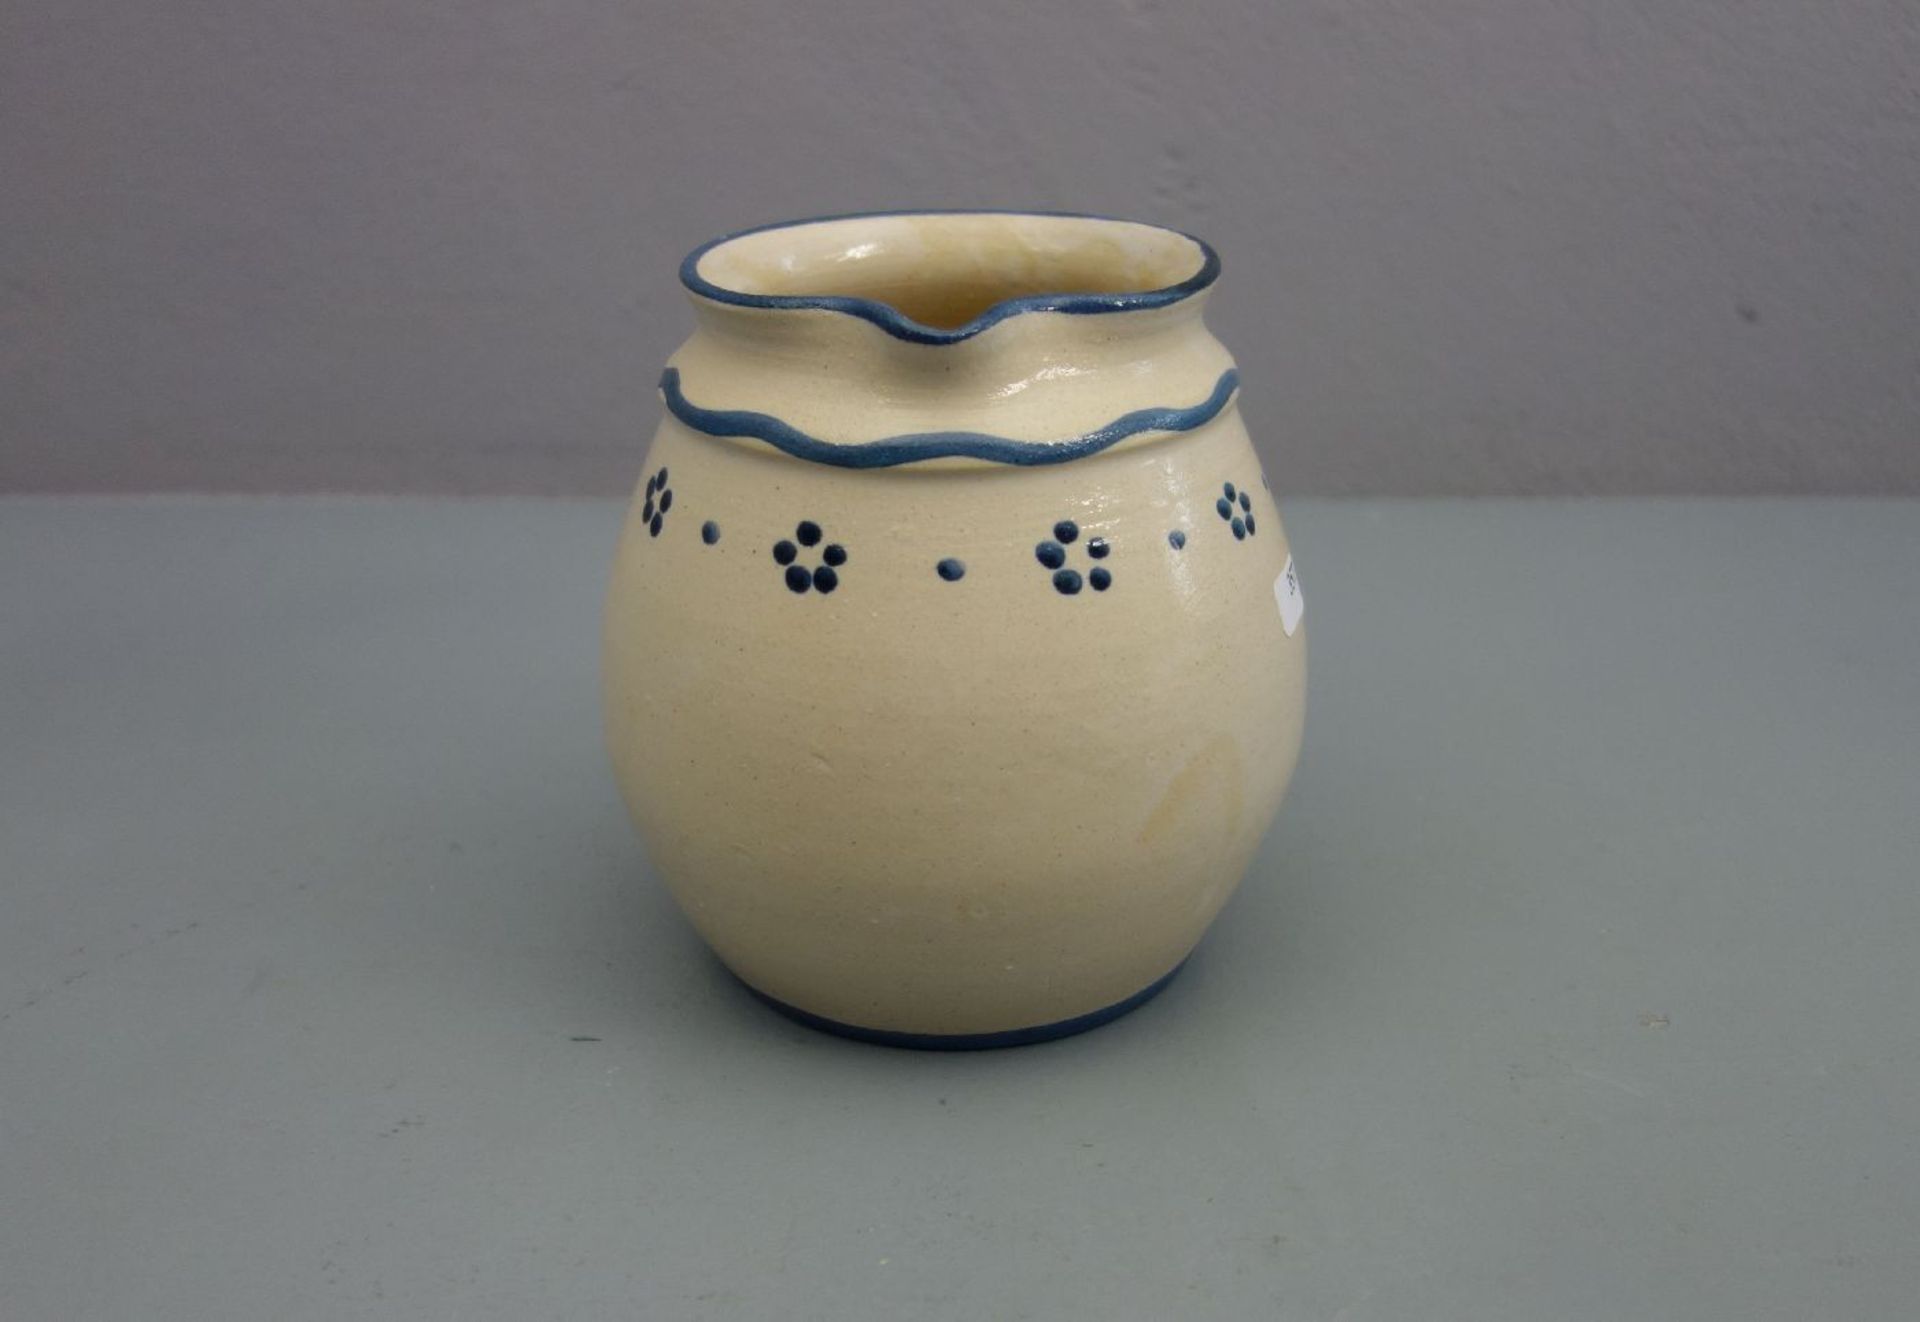 KRUG / ceramic jug, Keramik, heller Scherben, gebauchte Form mit profiliertem Hals, kleinem - Bild 2 aus 3